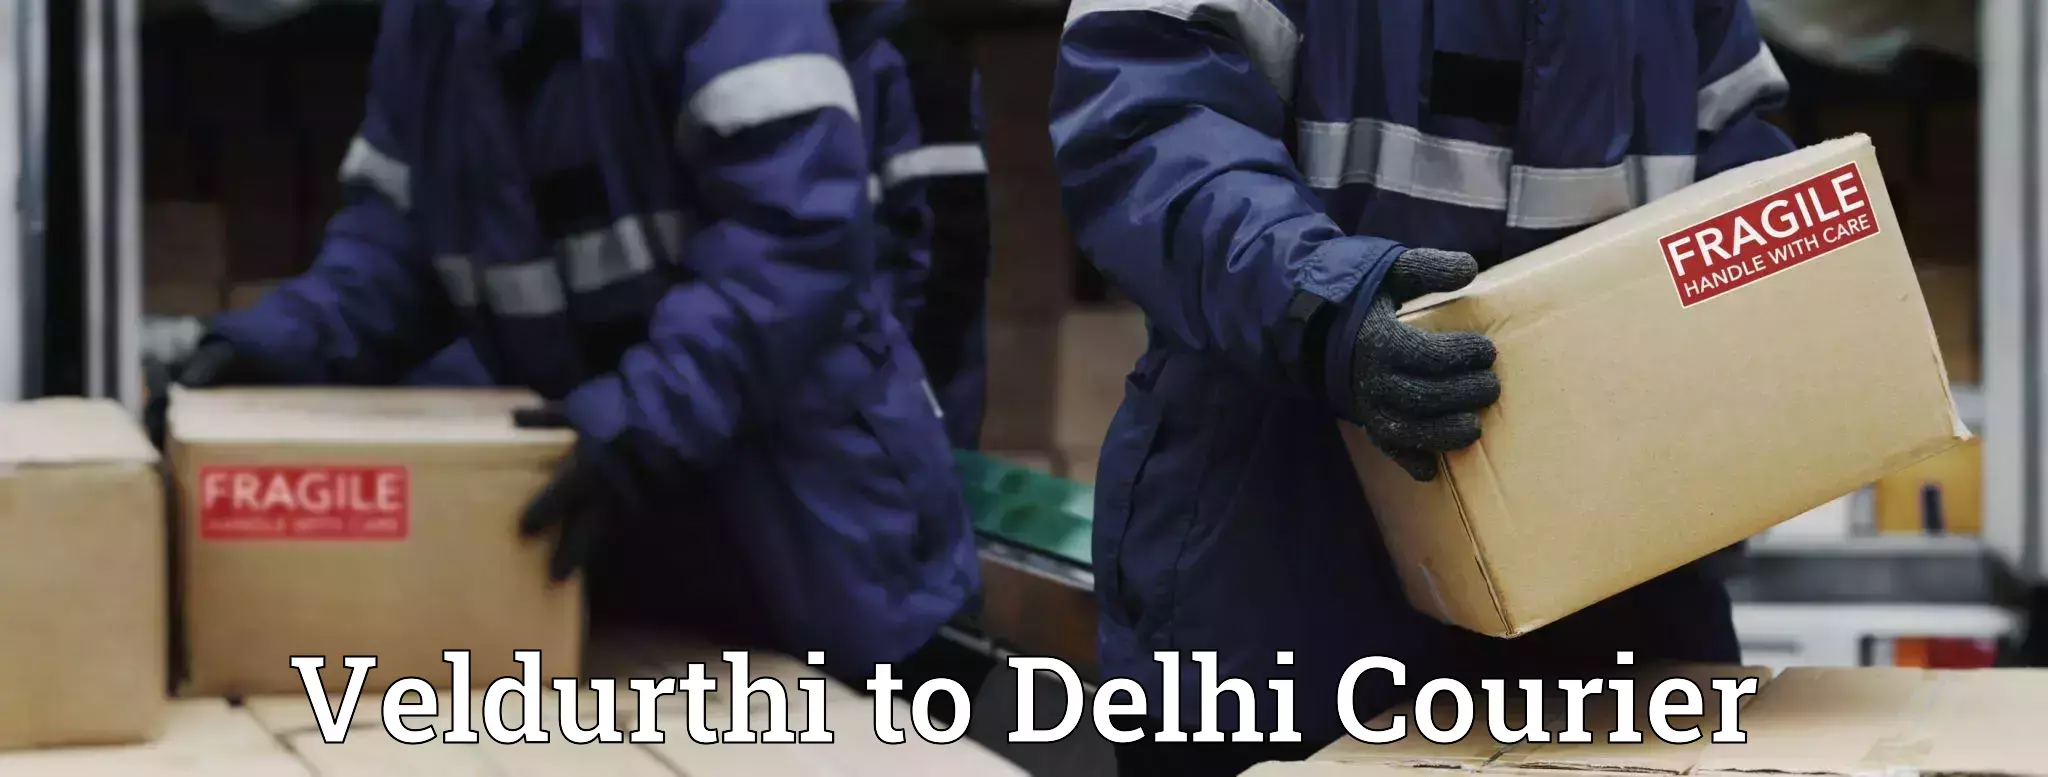 Return courier service Veldurthi to NIT Delhi